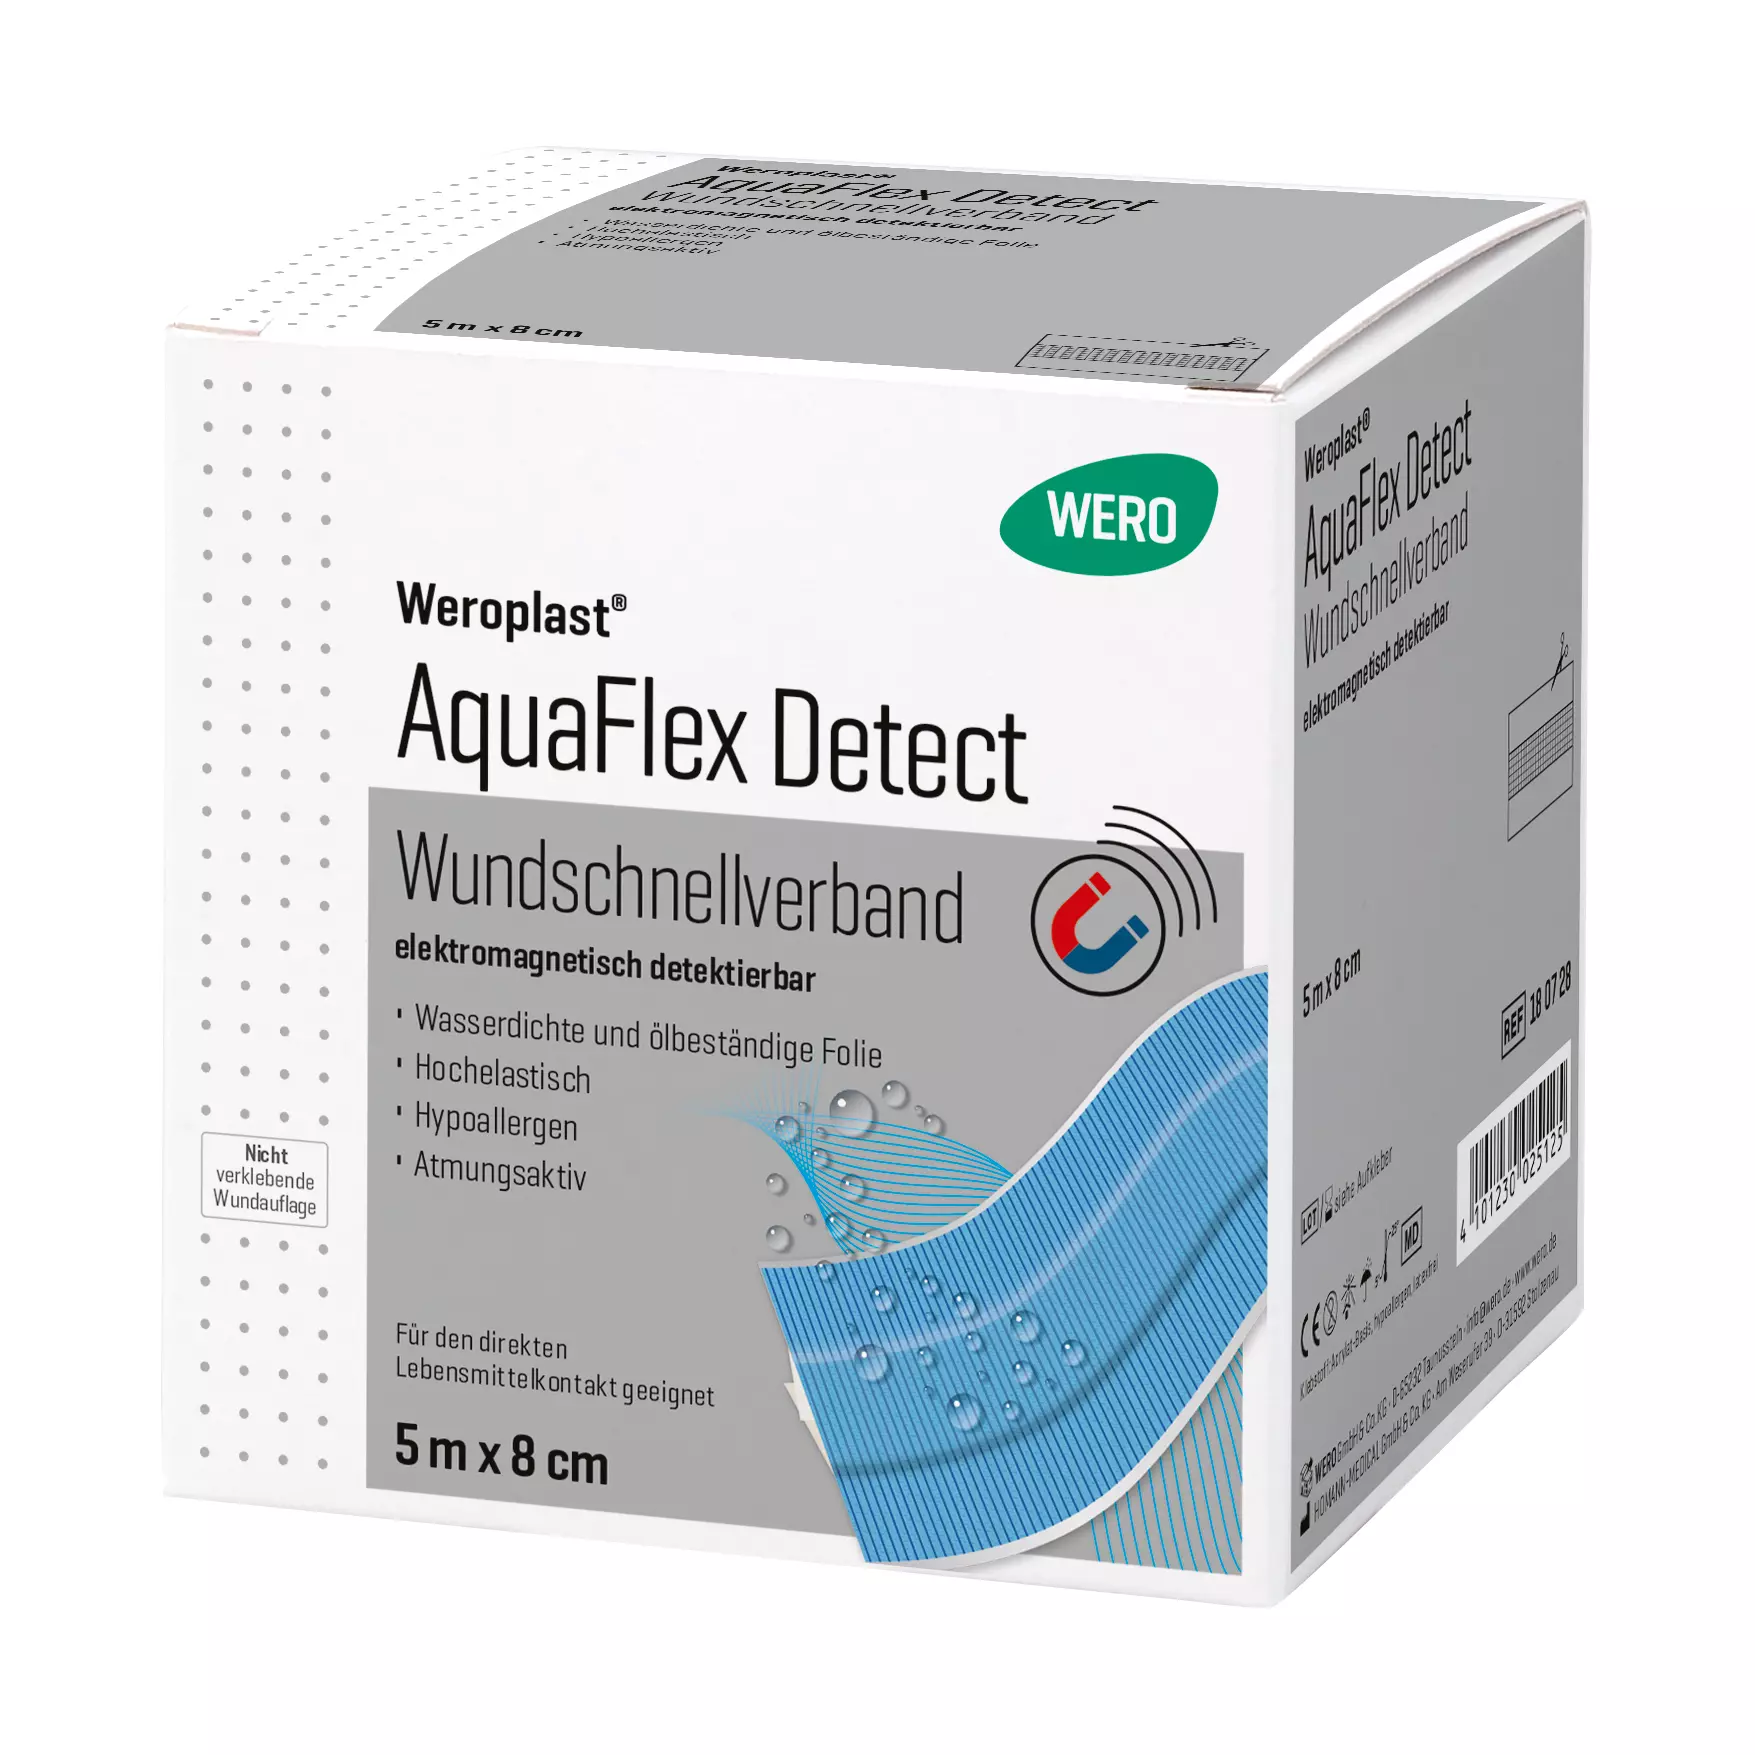 Weroplast® AquaFlex Detect Wundschnellverband - 8 cm, 5 m